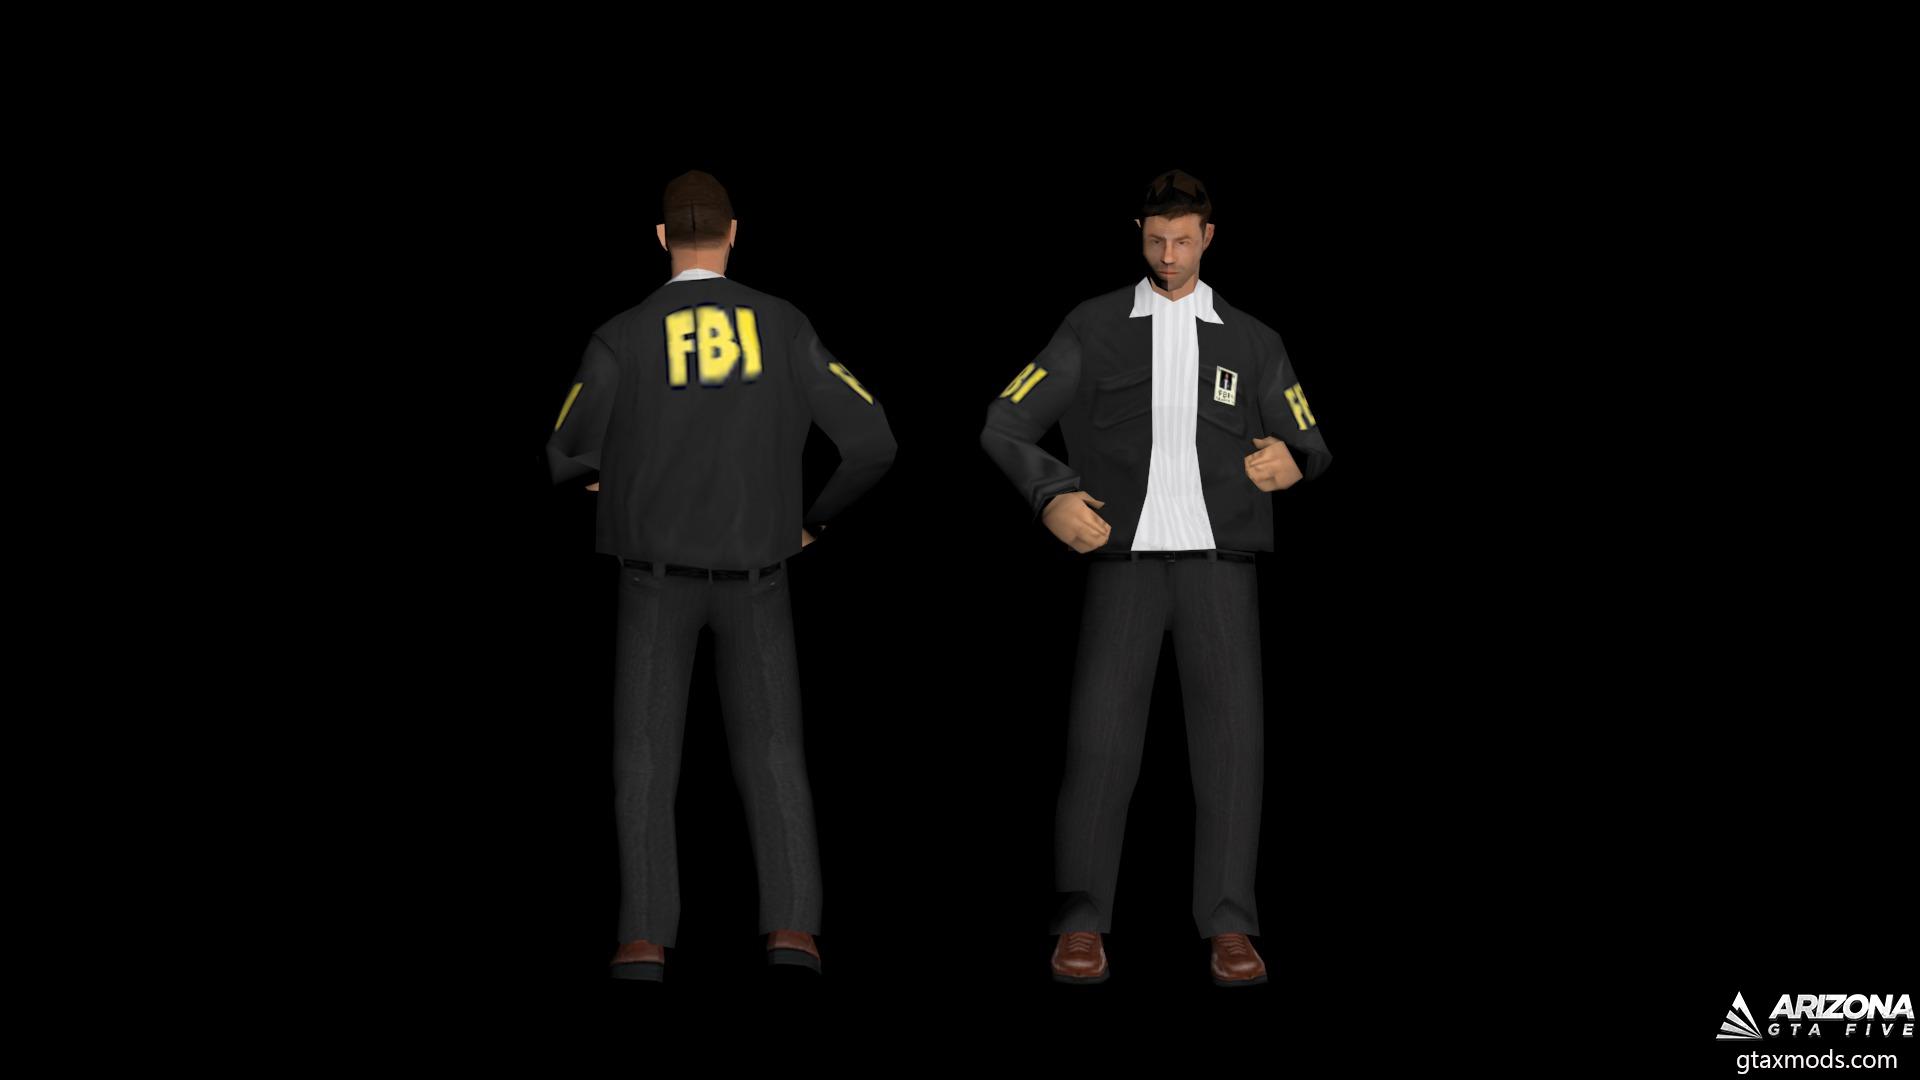 Chief FBI Agent